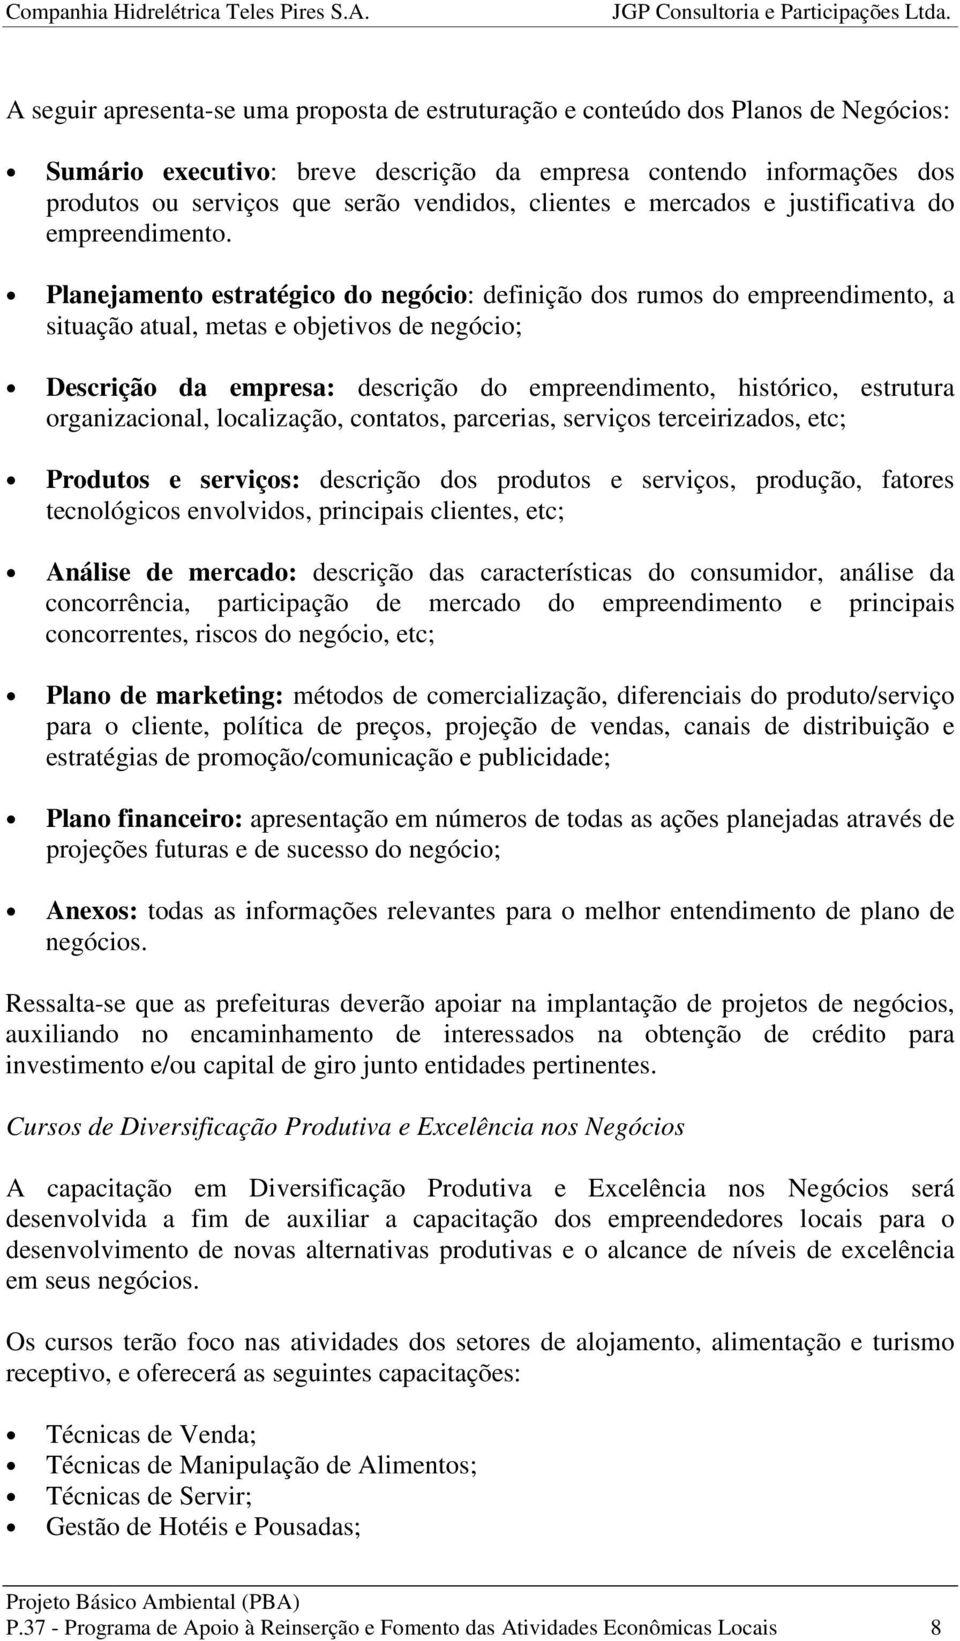 Planejamento estratégico do negócio: definição dos rumos do empreendimento, a situação atual, metas e objetivos de negócio; Descrição da empresa: descrição do empreendimento, histórico, estrutura